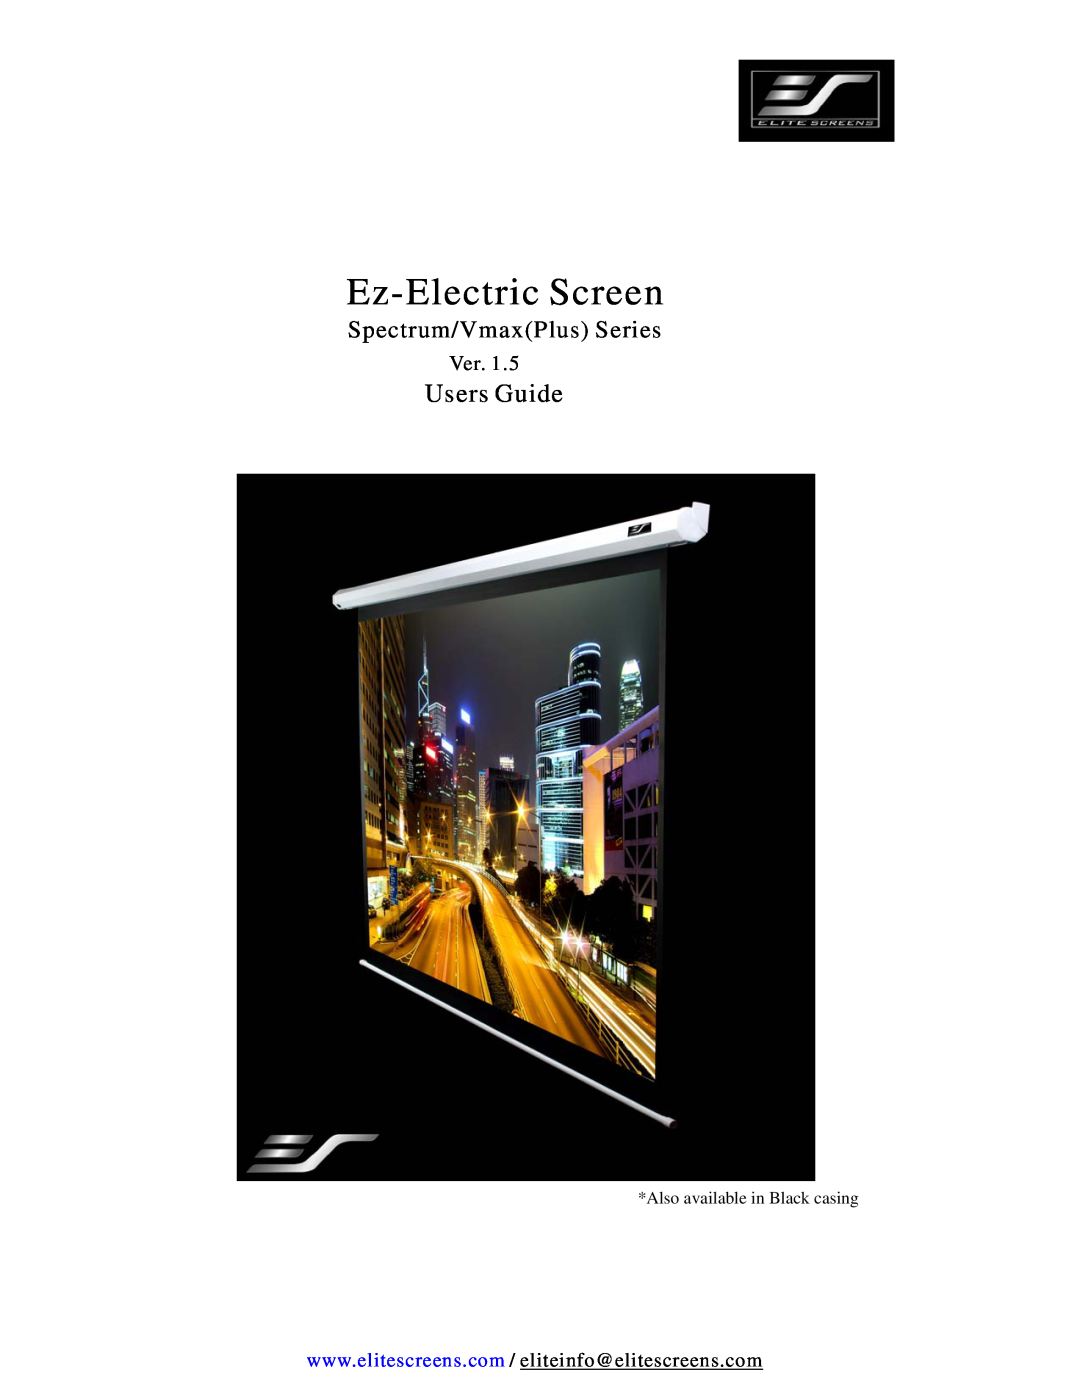 Elite Screens VMAX (PLUS) SERIES manual Spectrum/VmaxPlus Series, Ez-Electric Screen, Users Guide 